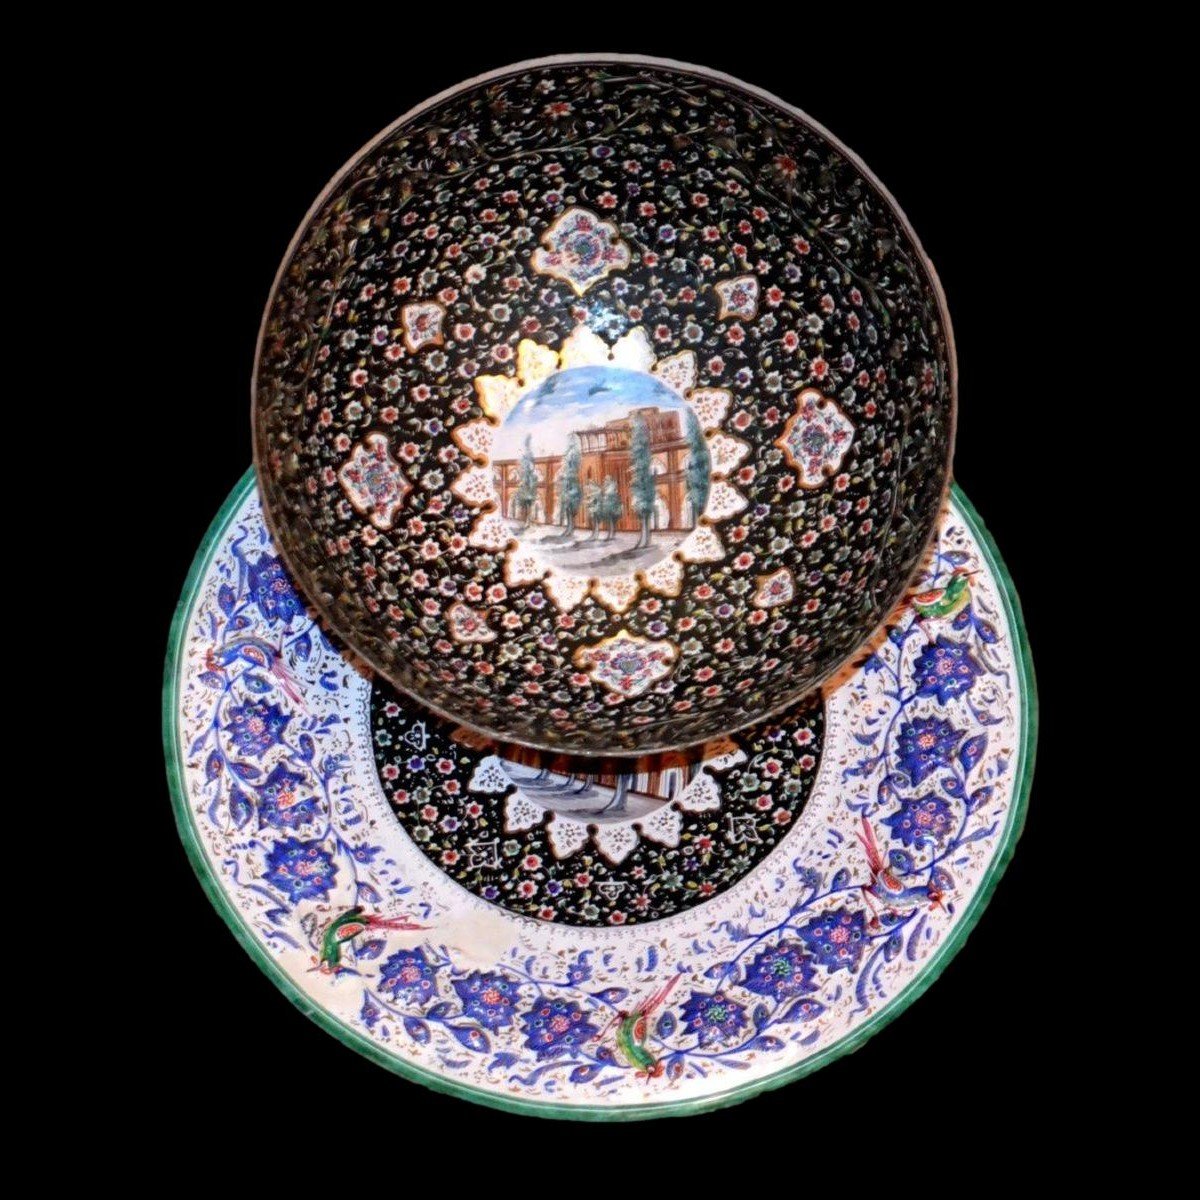 Coupe et plat, Minâkâri ancien, vers1900, Ispahan, Iran, décor du palais Ali Qapu